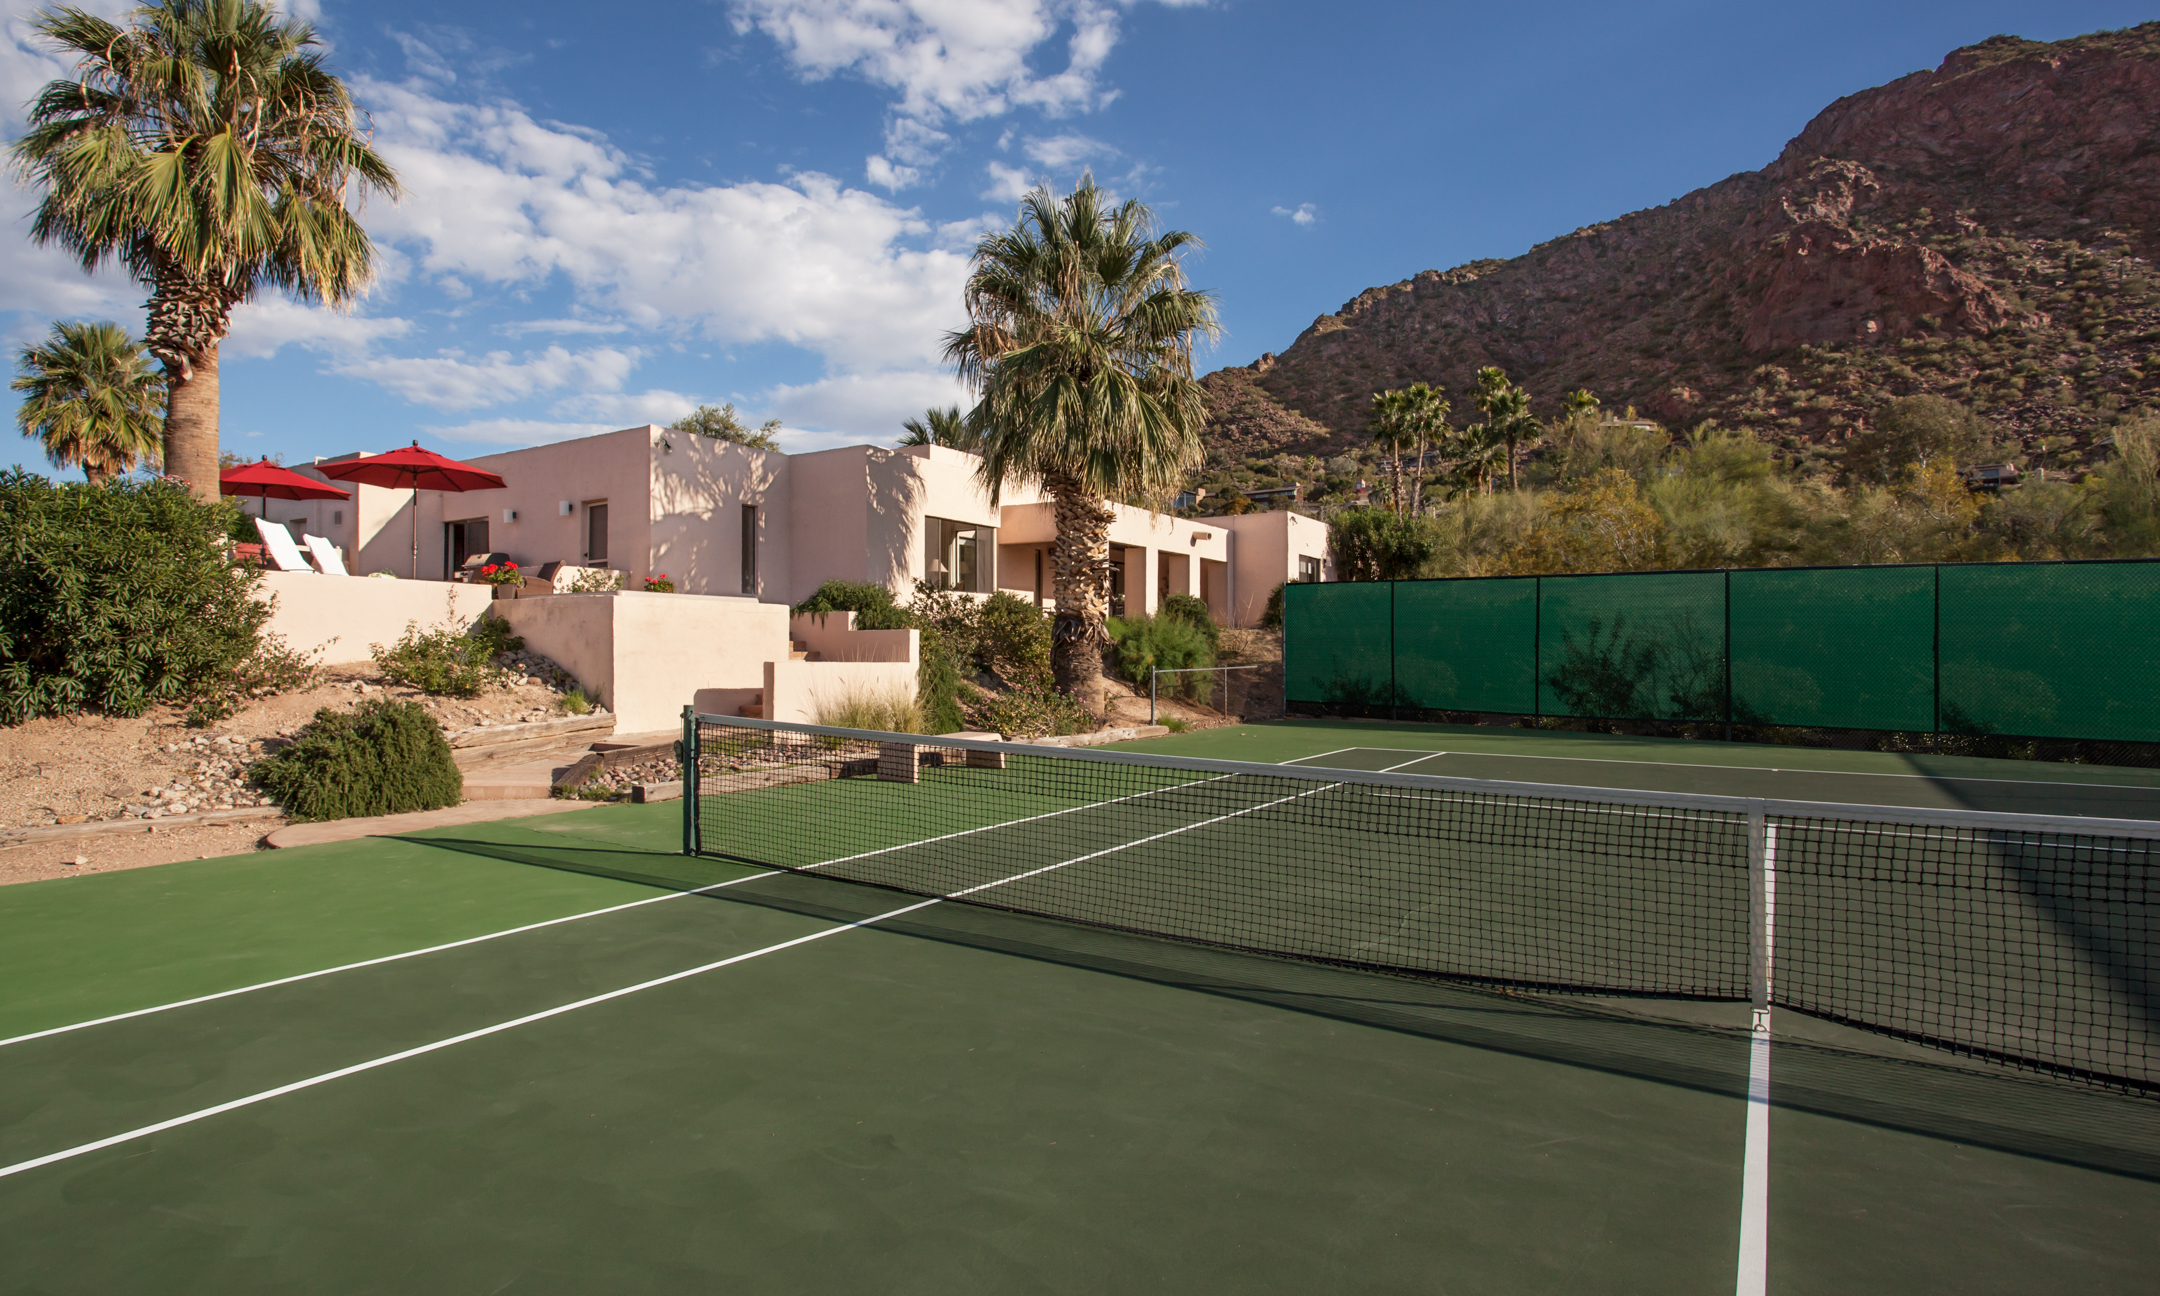 Villa Norte private tennis court.